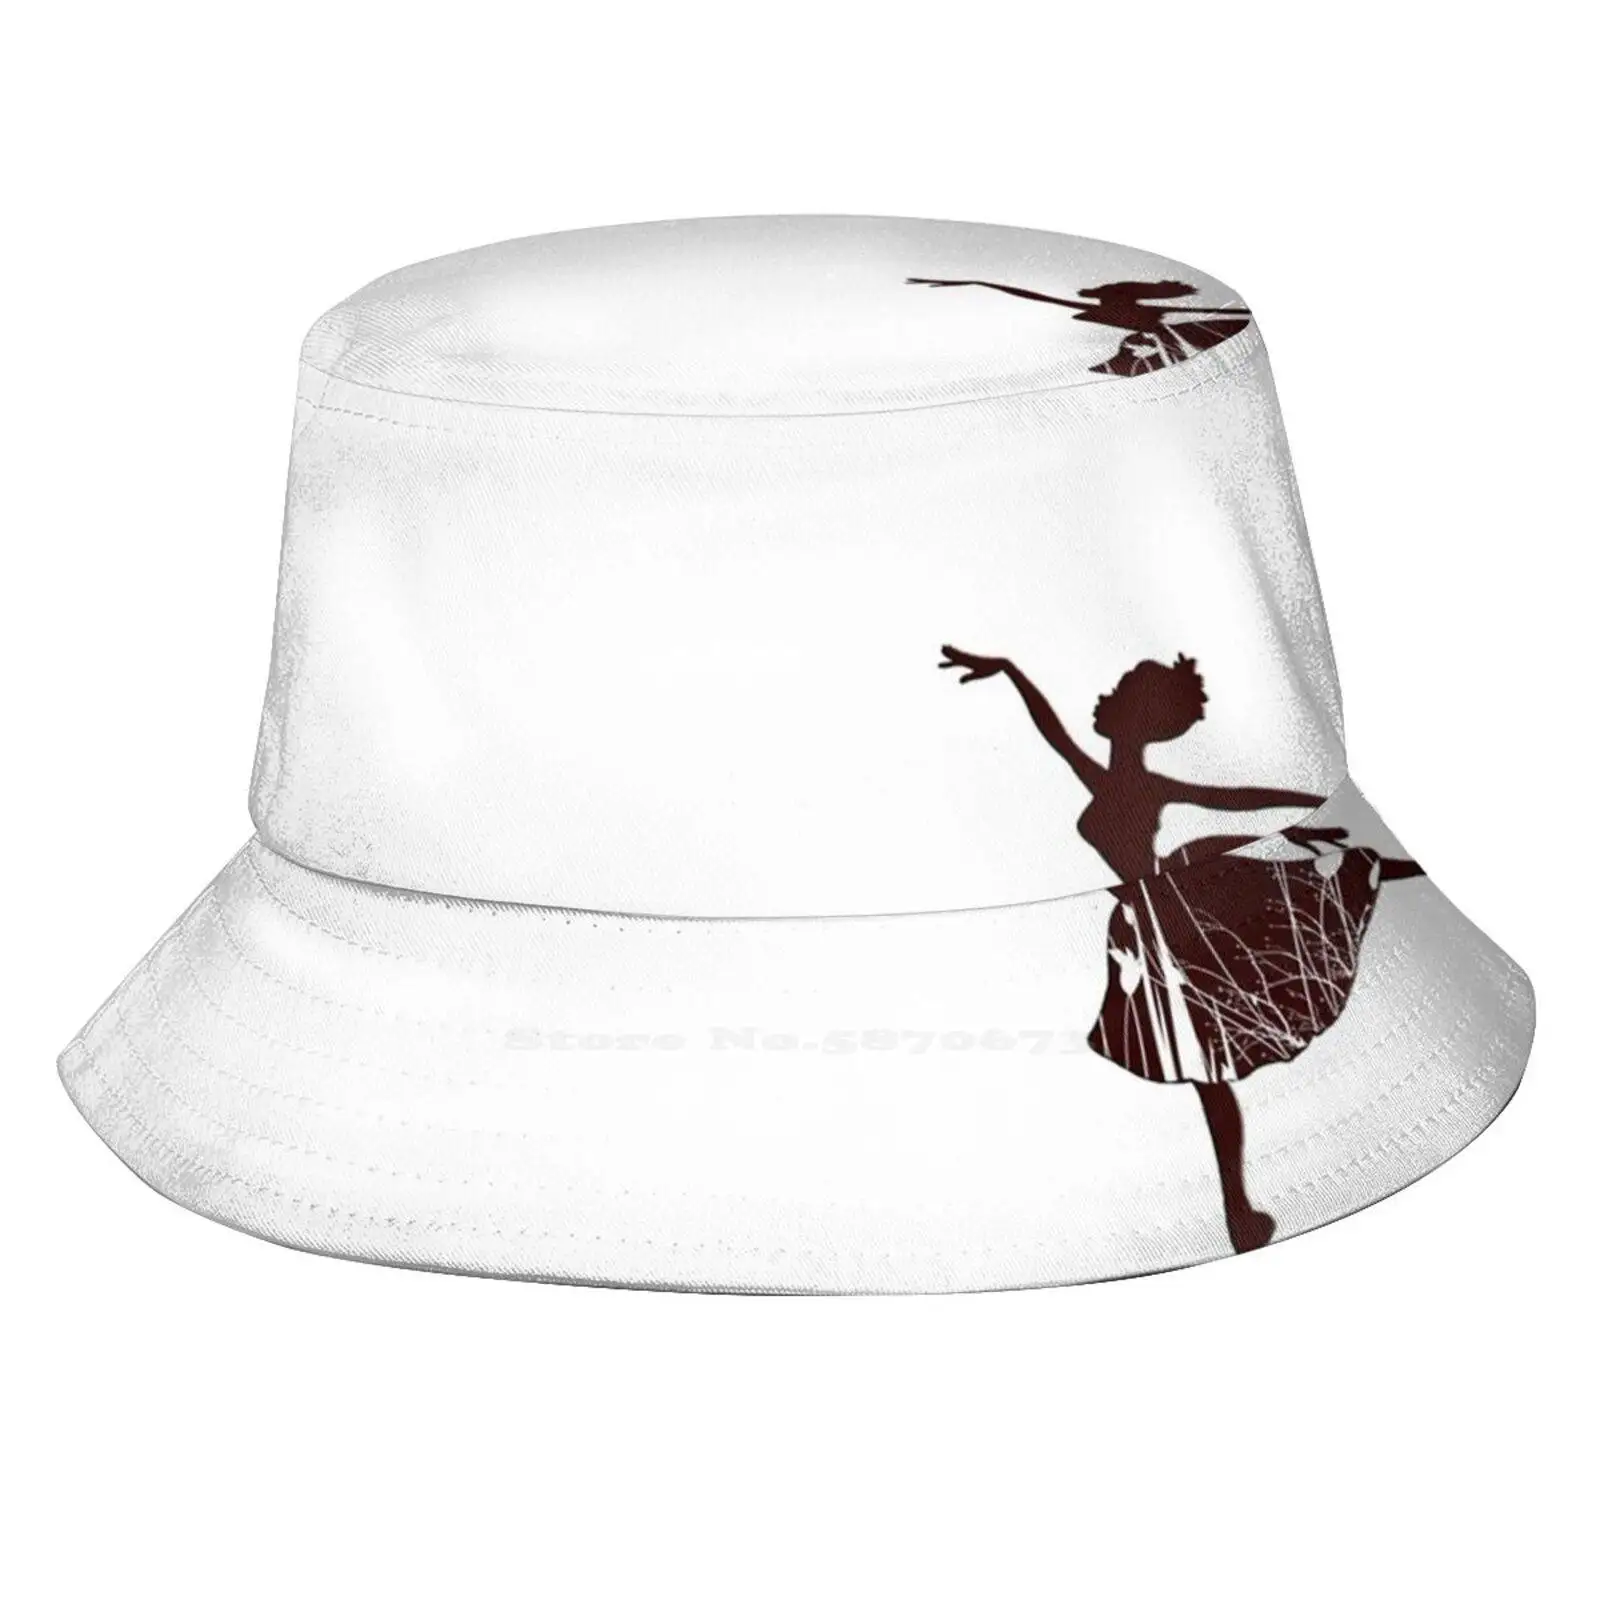 Танцевальная шляпа. Бальная шляпа. Головной убор балерины. Танец со шляпами. Головной убор на танец летний перезвон.